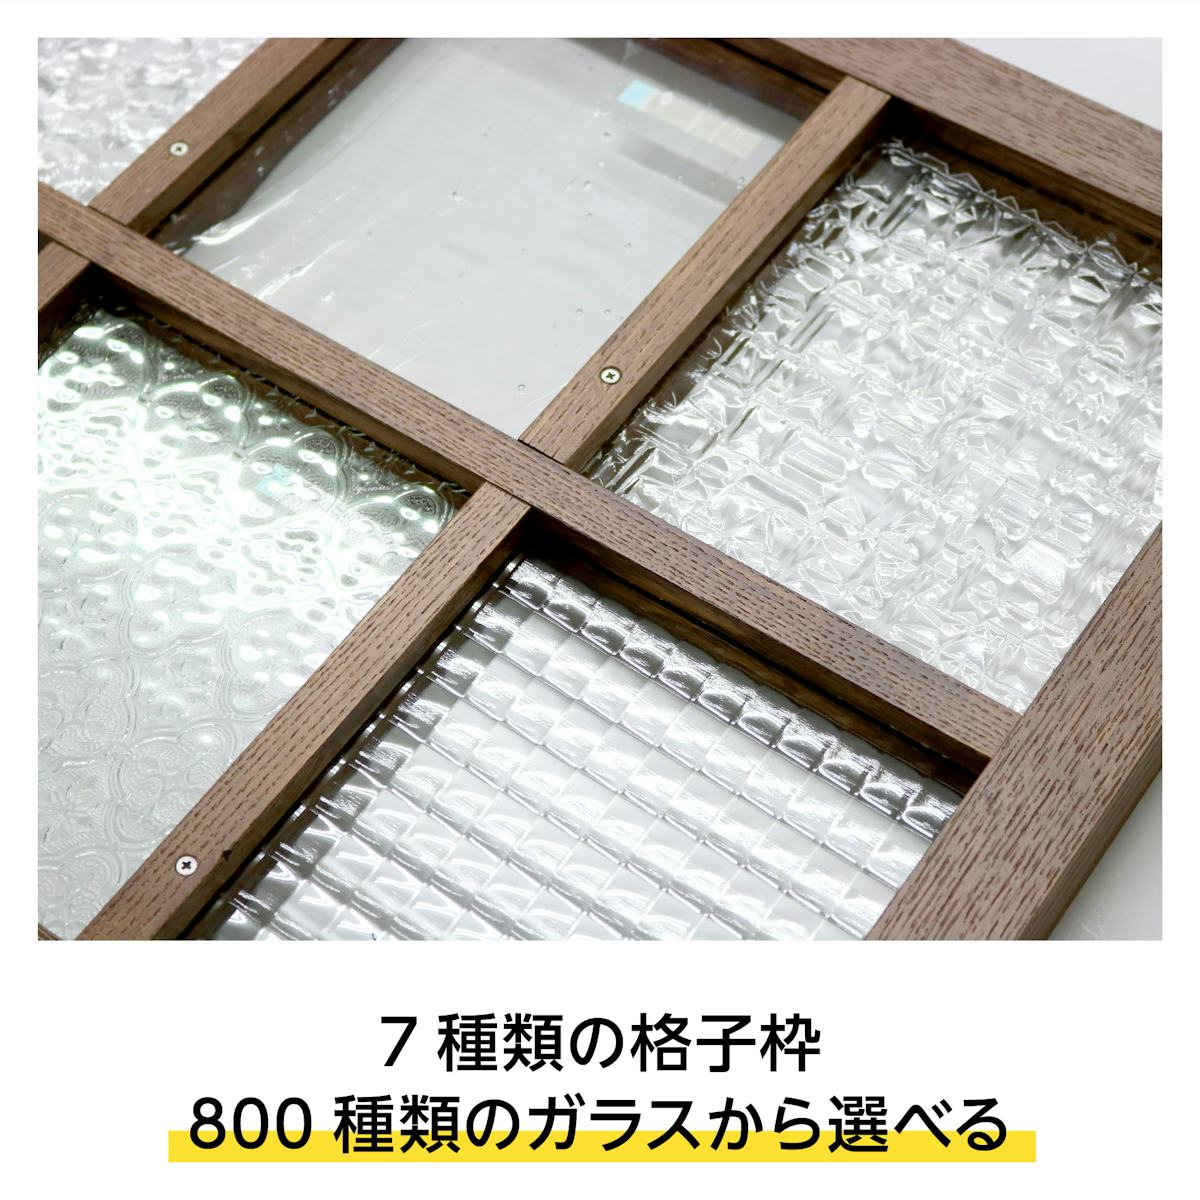 木枠選択ガラスシステム - 格子枠に好きなガラスを入れた木製窓が製作可能／7種類の格子枠・800種類のガラスから選択可能